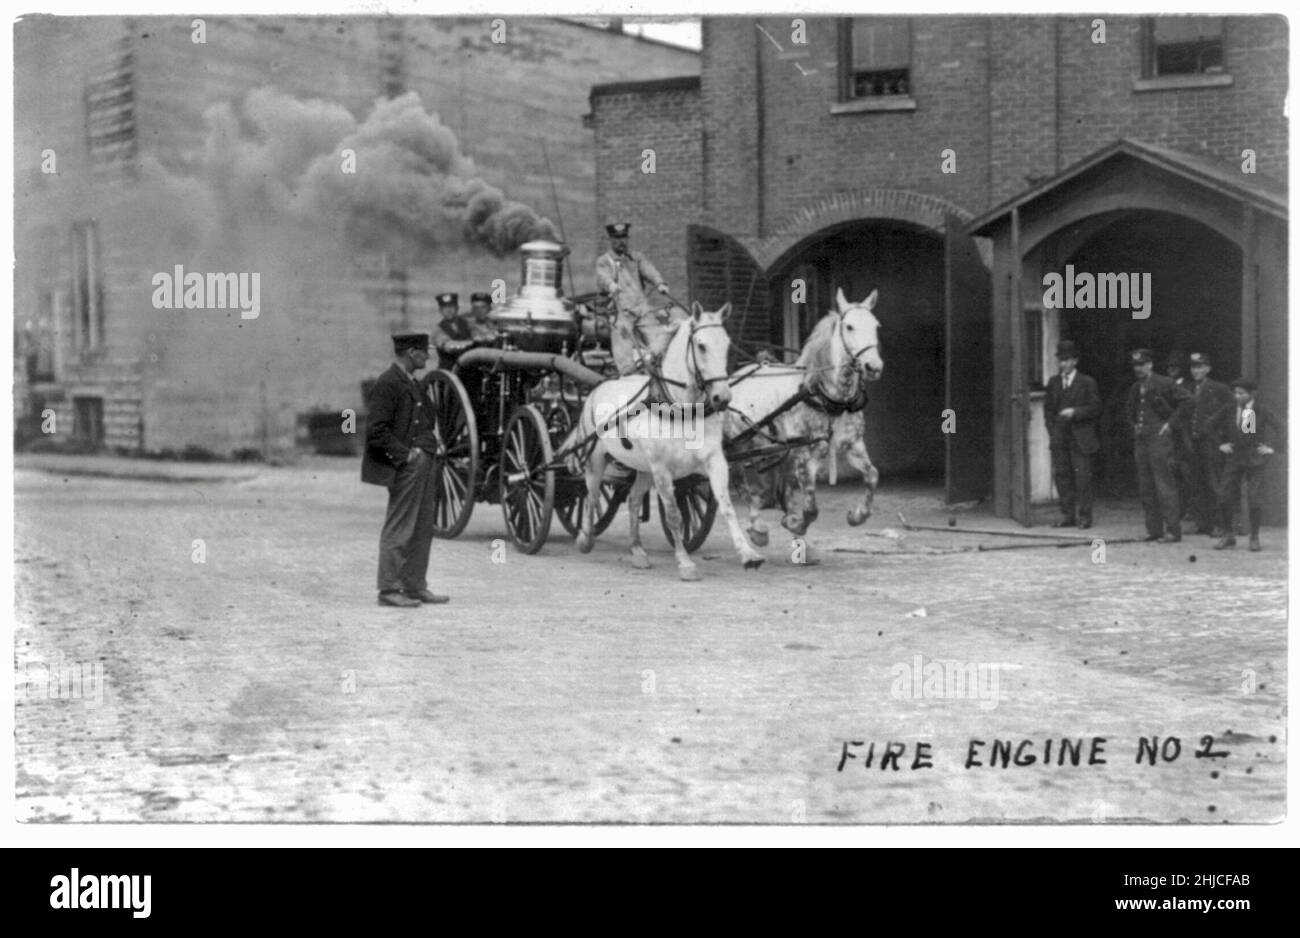 E L Tobias Foto mit dem Titel Fire Engine No 2 - weiß - pferdegezogener Feuerwehrauto mit Rauch, der aus dem Zylinder strömt - 1909 Stockfoto